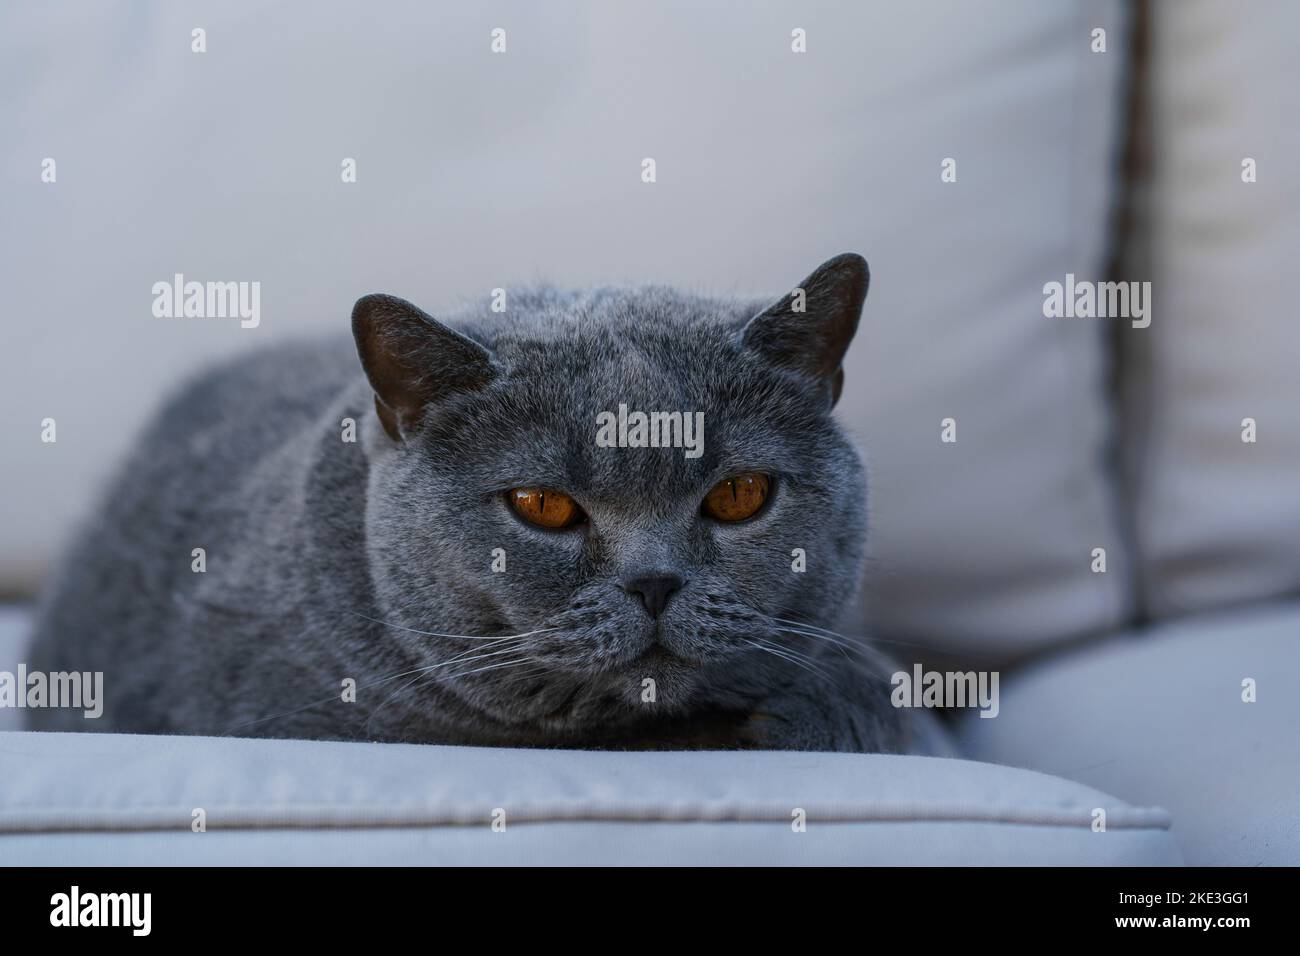 Eine große graubraune Katze mit großen braunen Augen liegt auf einem hellgrauen Sofa Stockfoto